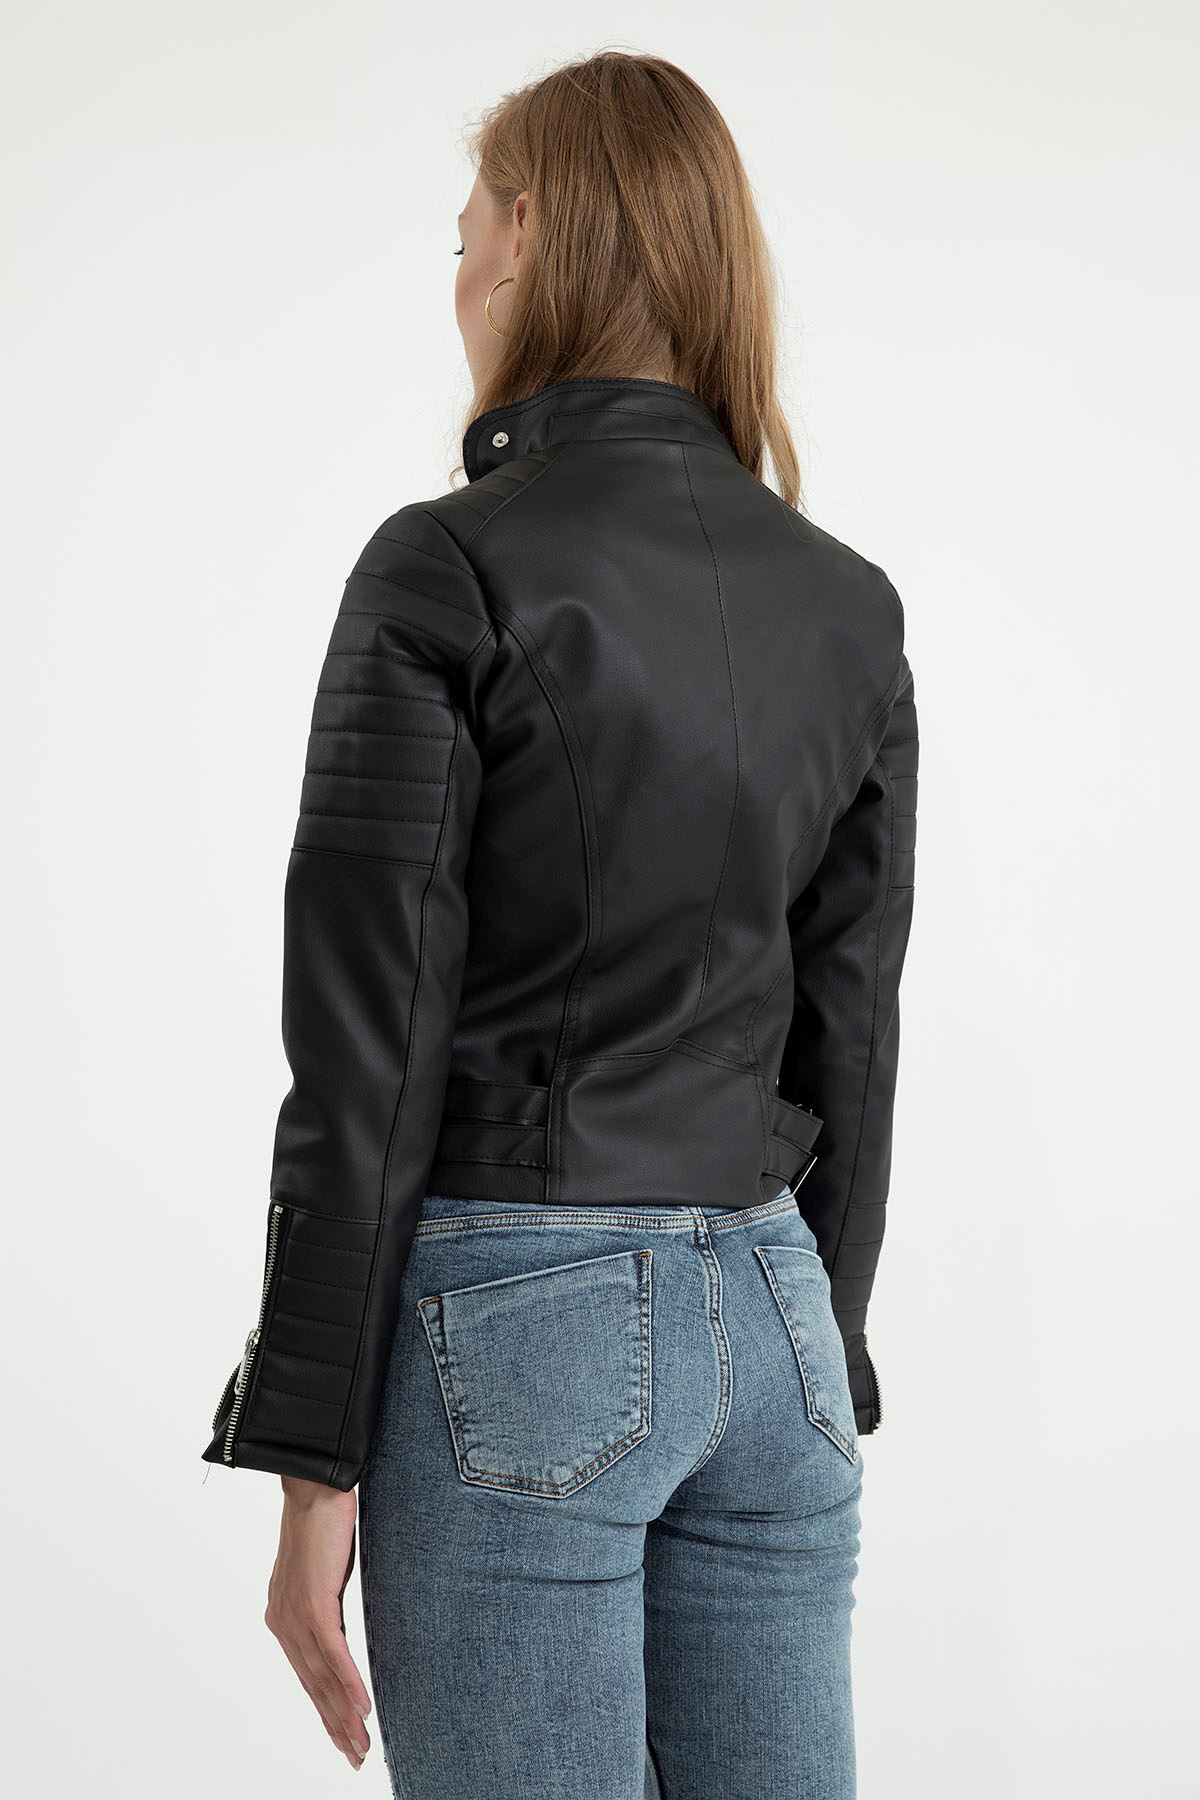 экокожа тканьна молнии женский пиджак - Чёрный